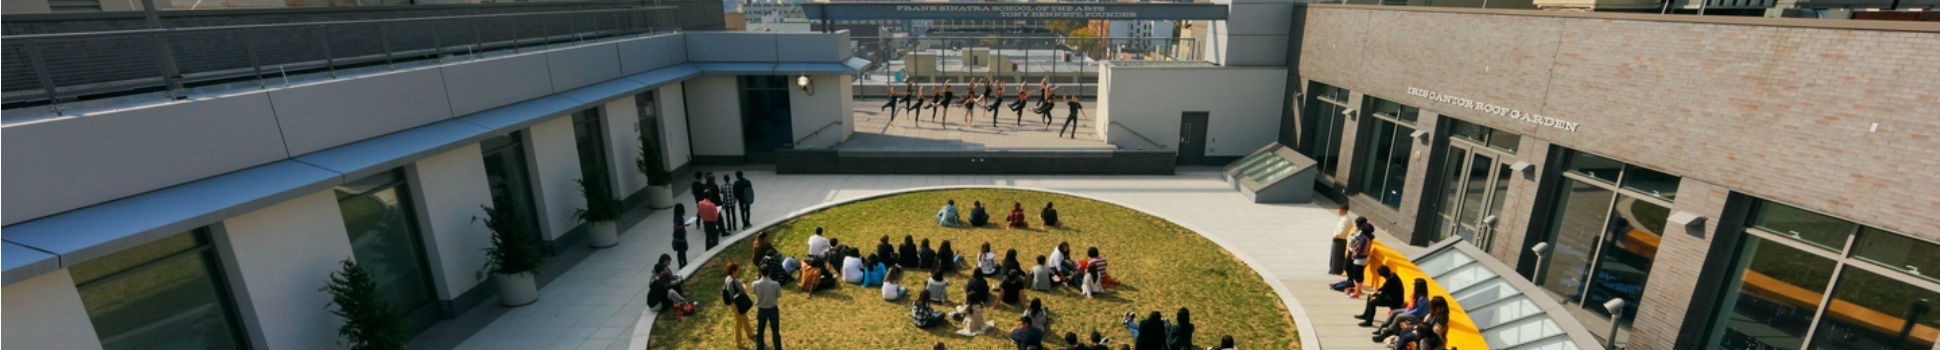 Frank Sinatra School of the Arts High School Rooftop - Queens